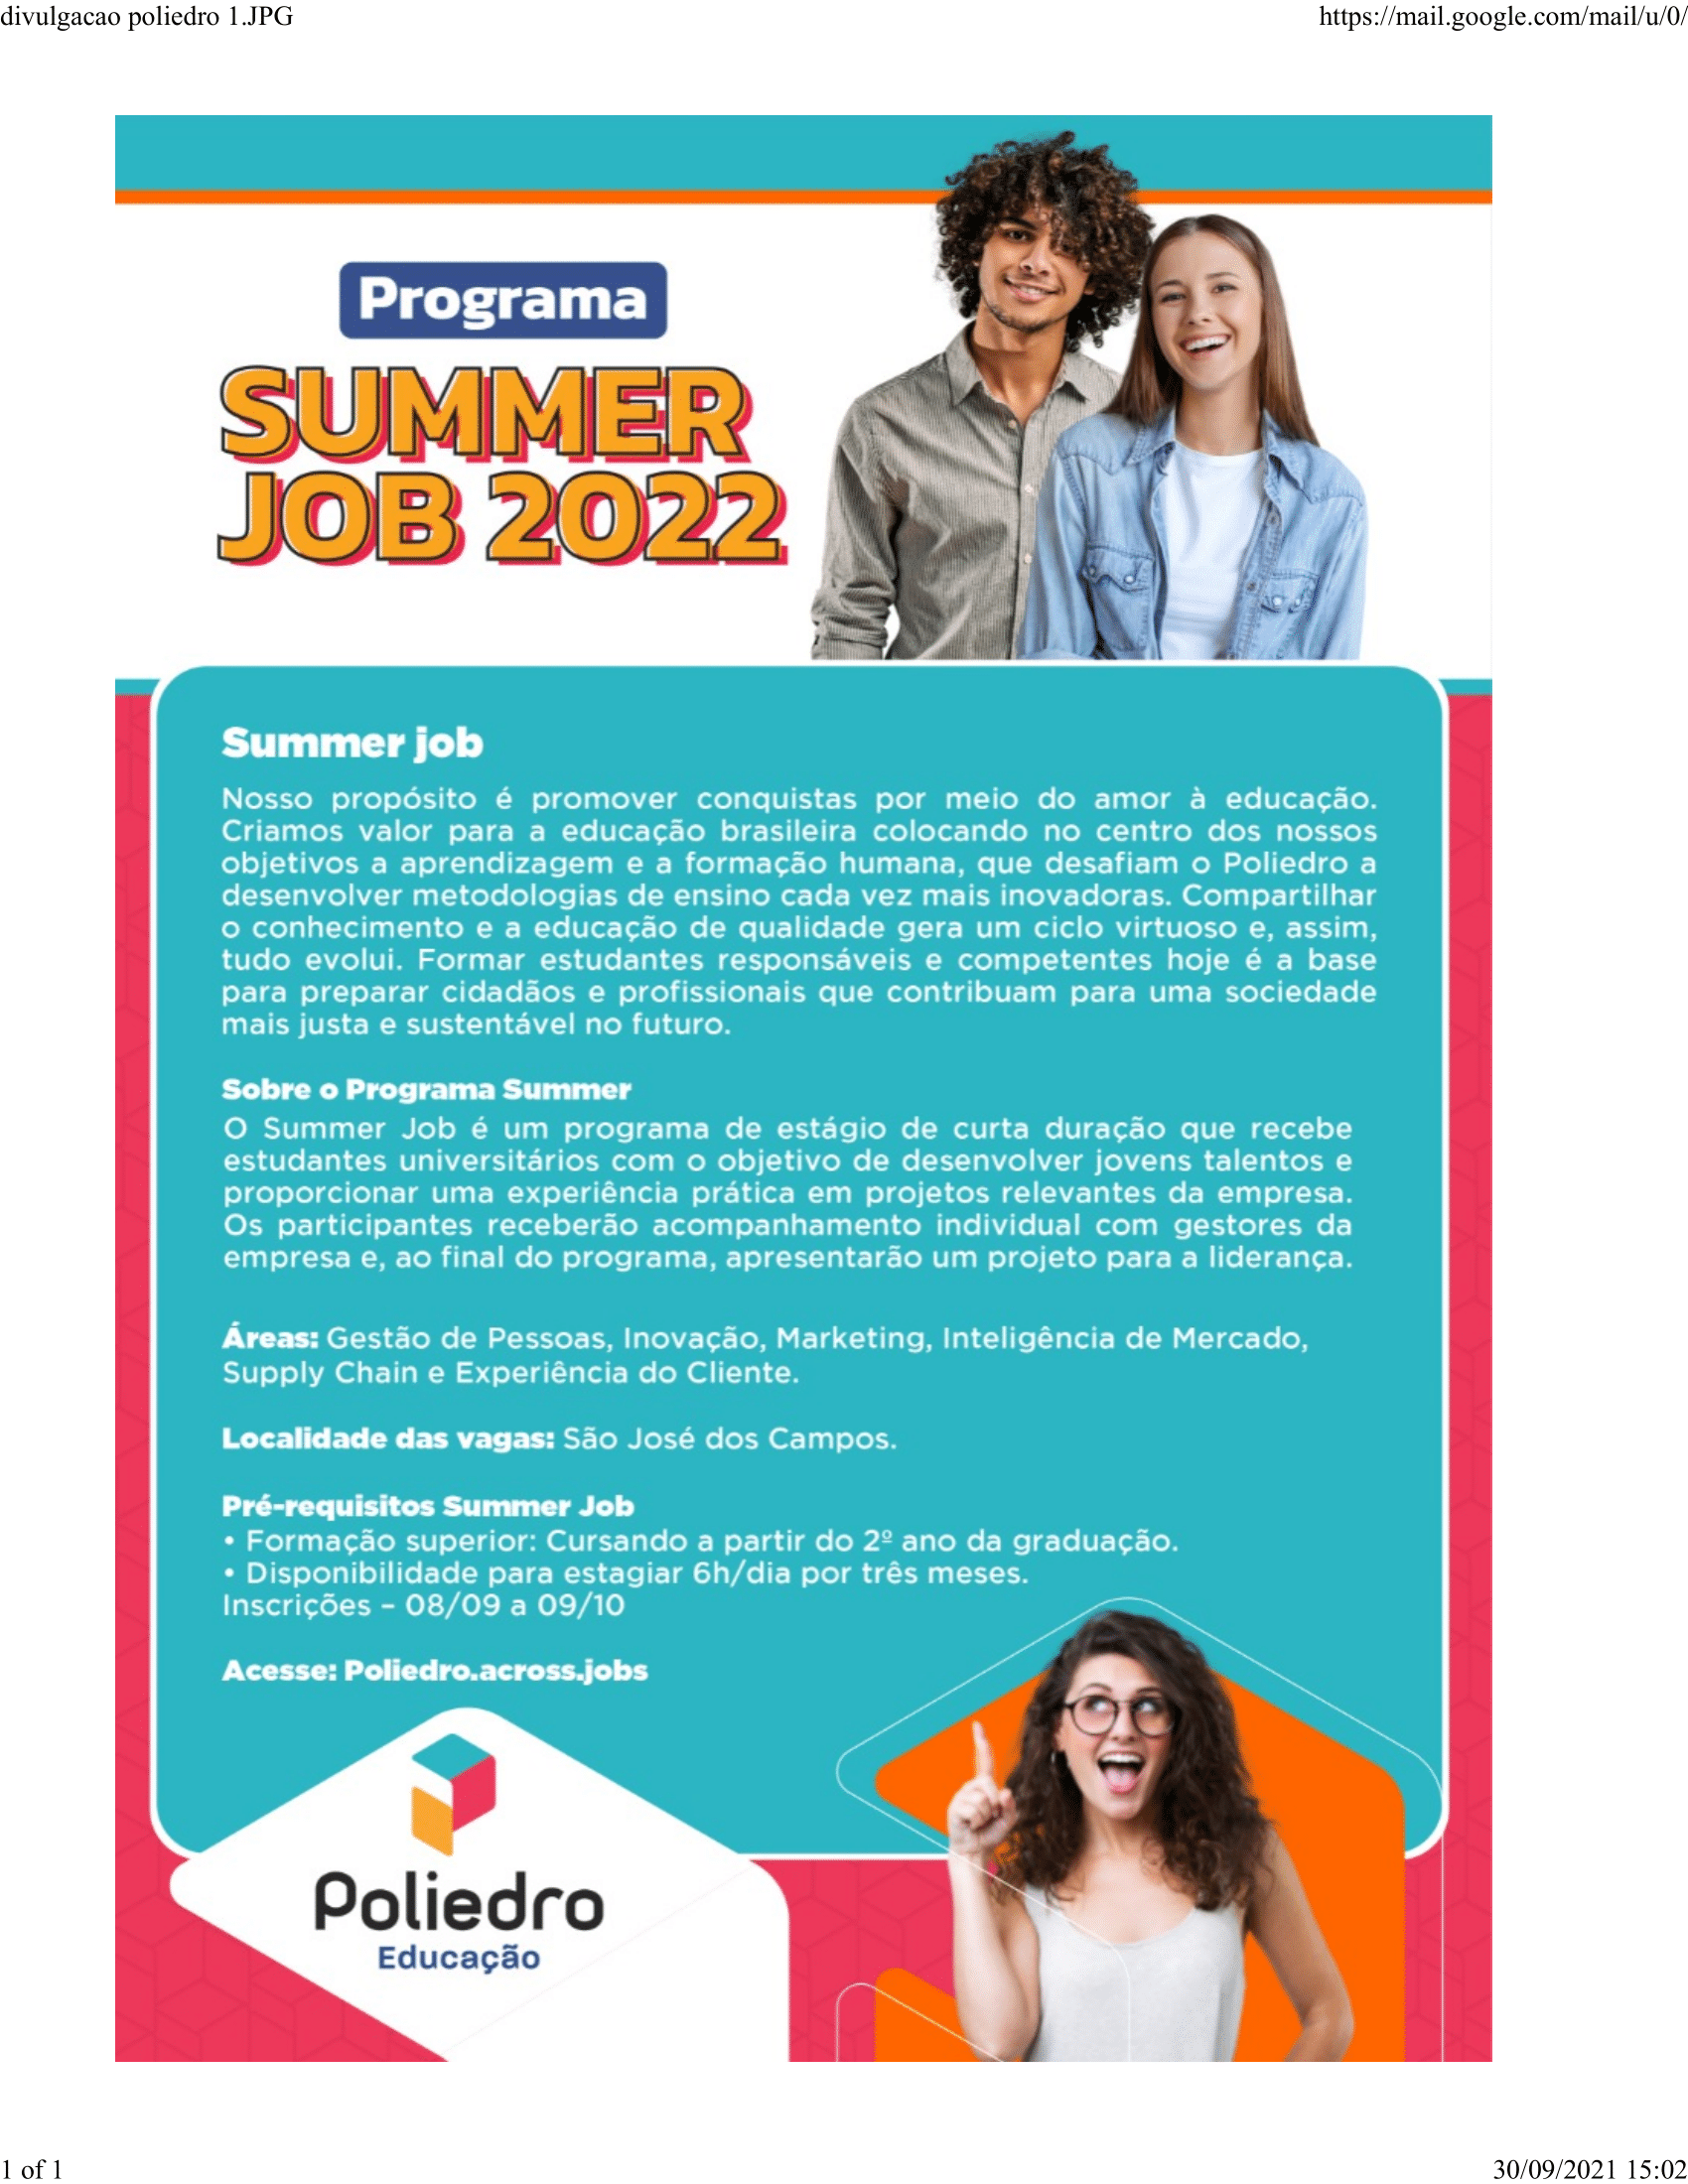 Summer_Job_2022-1.png